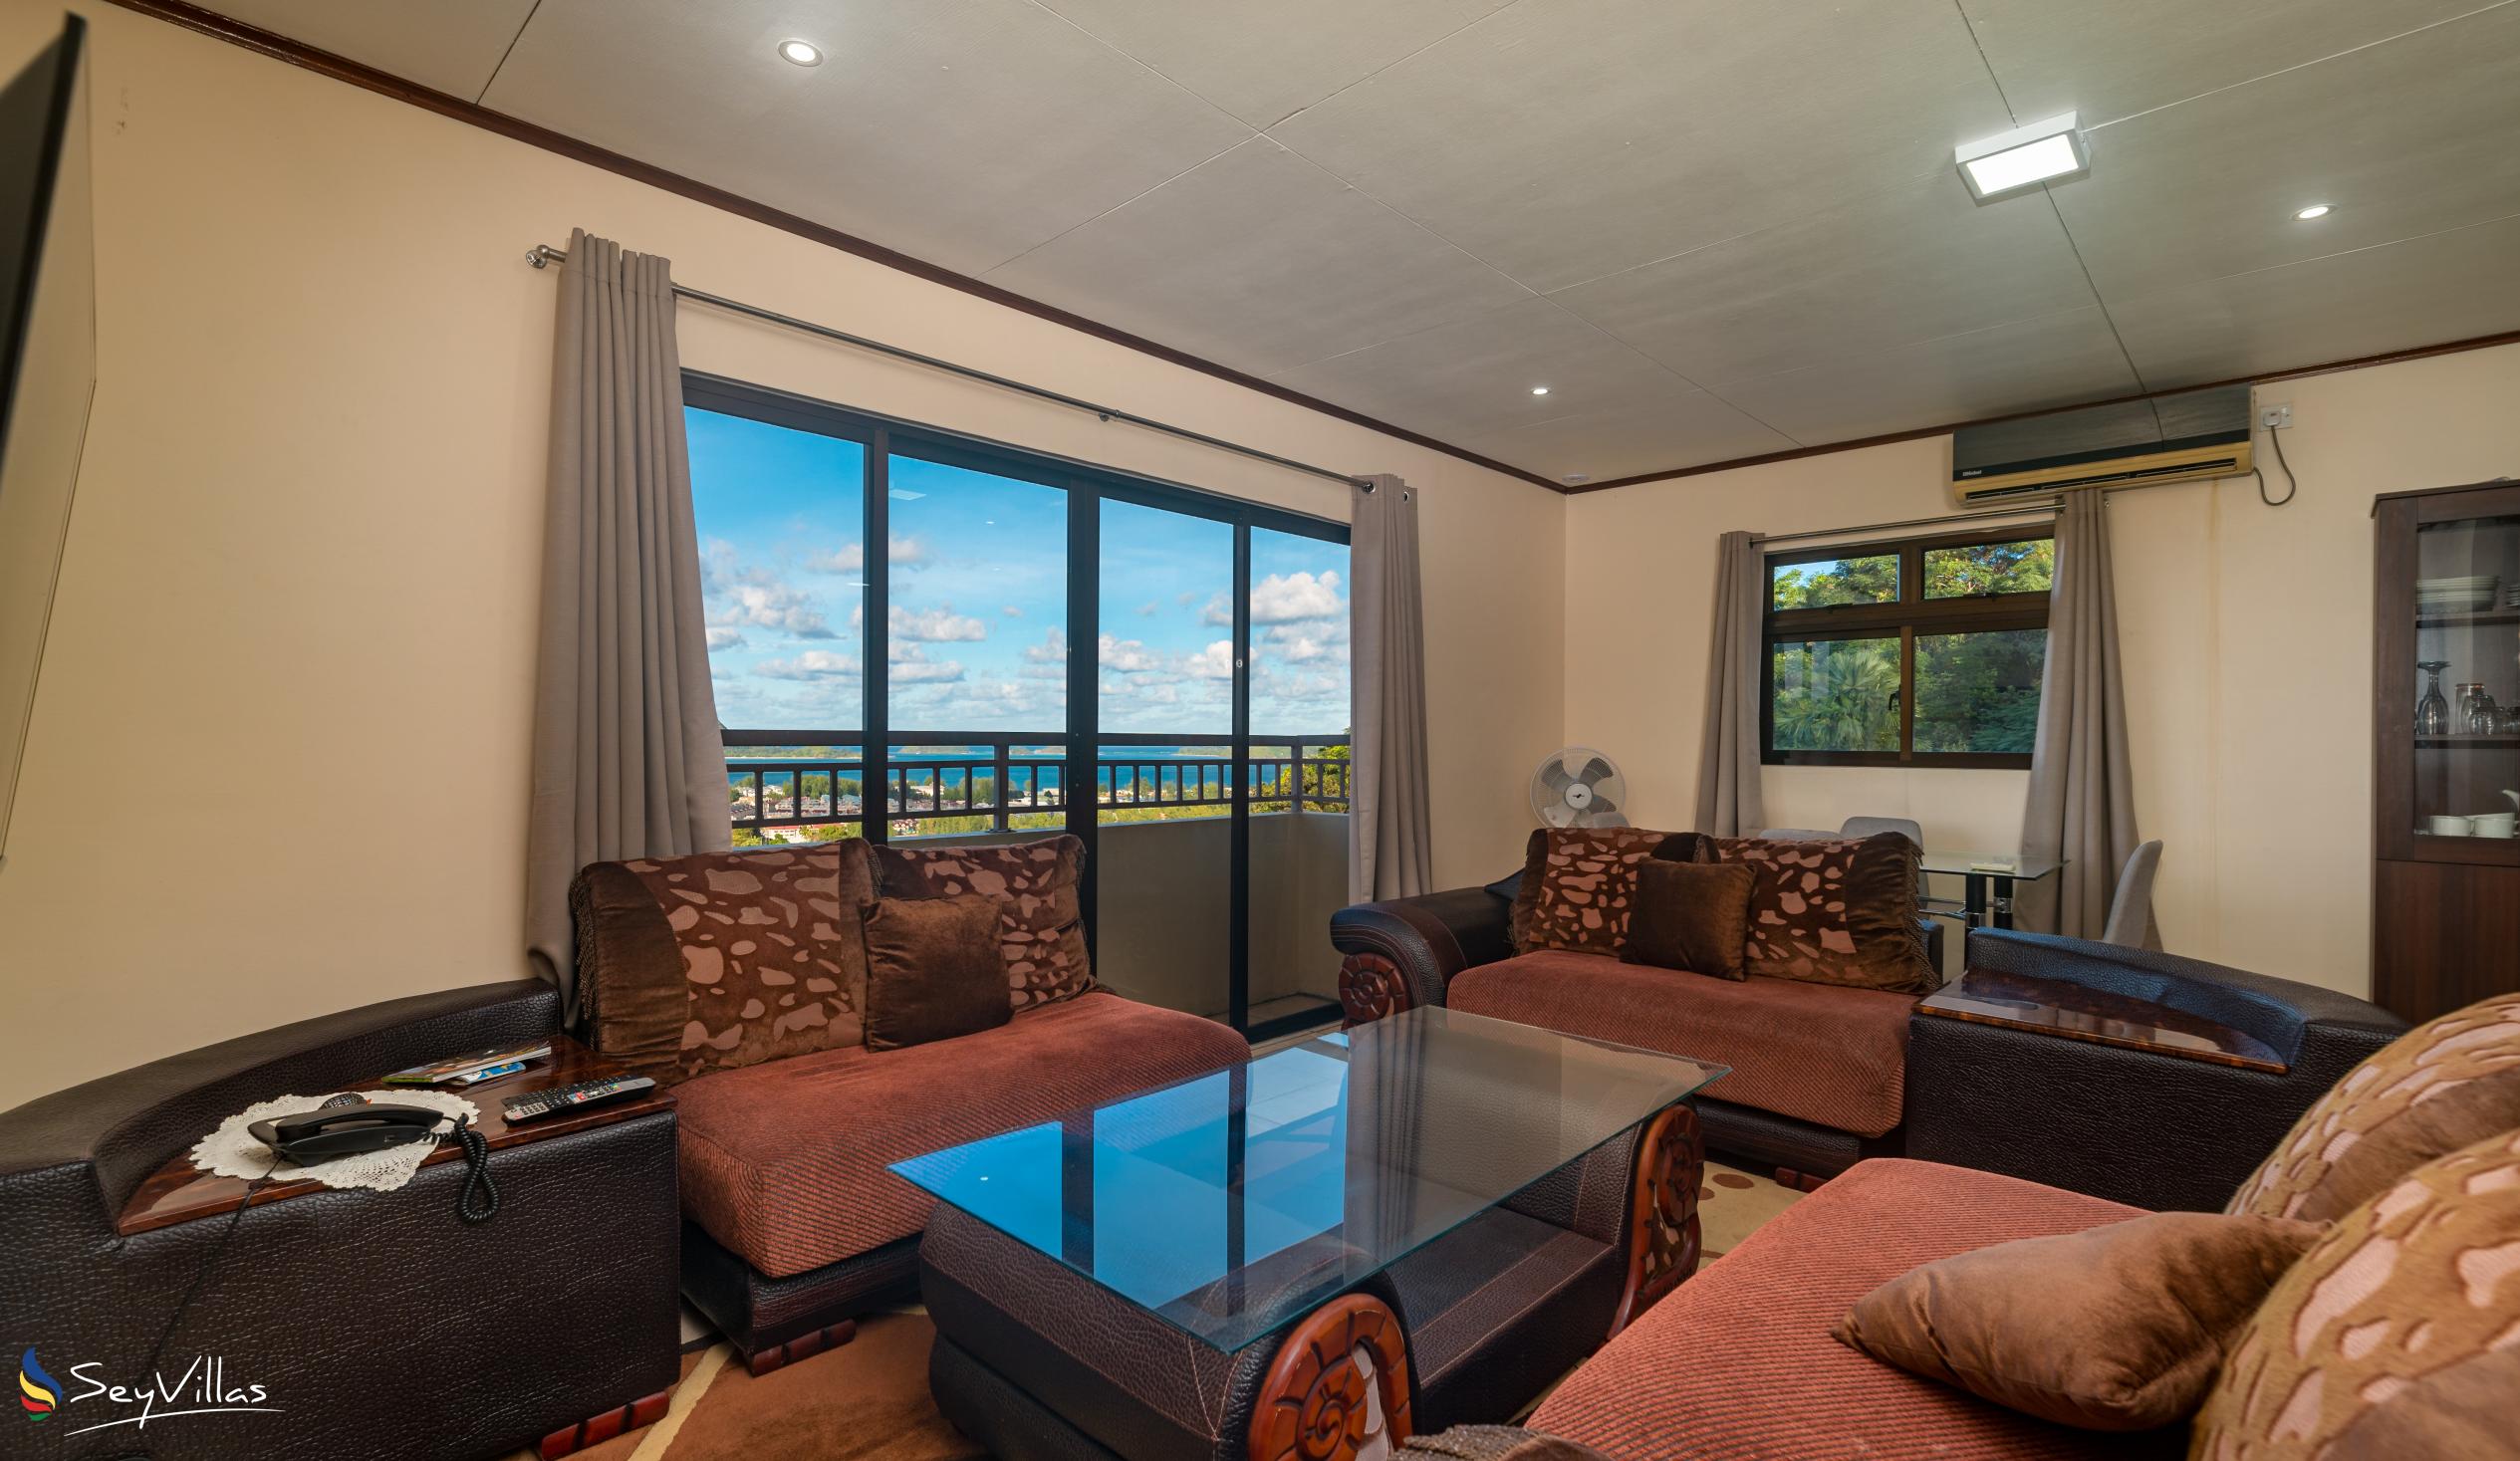 Foto 41: Maison L'Horizon - Appartamento con 2 camere Soley - Mahé (Seychelles)